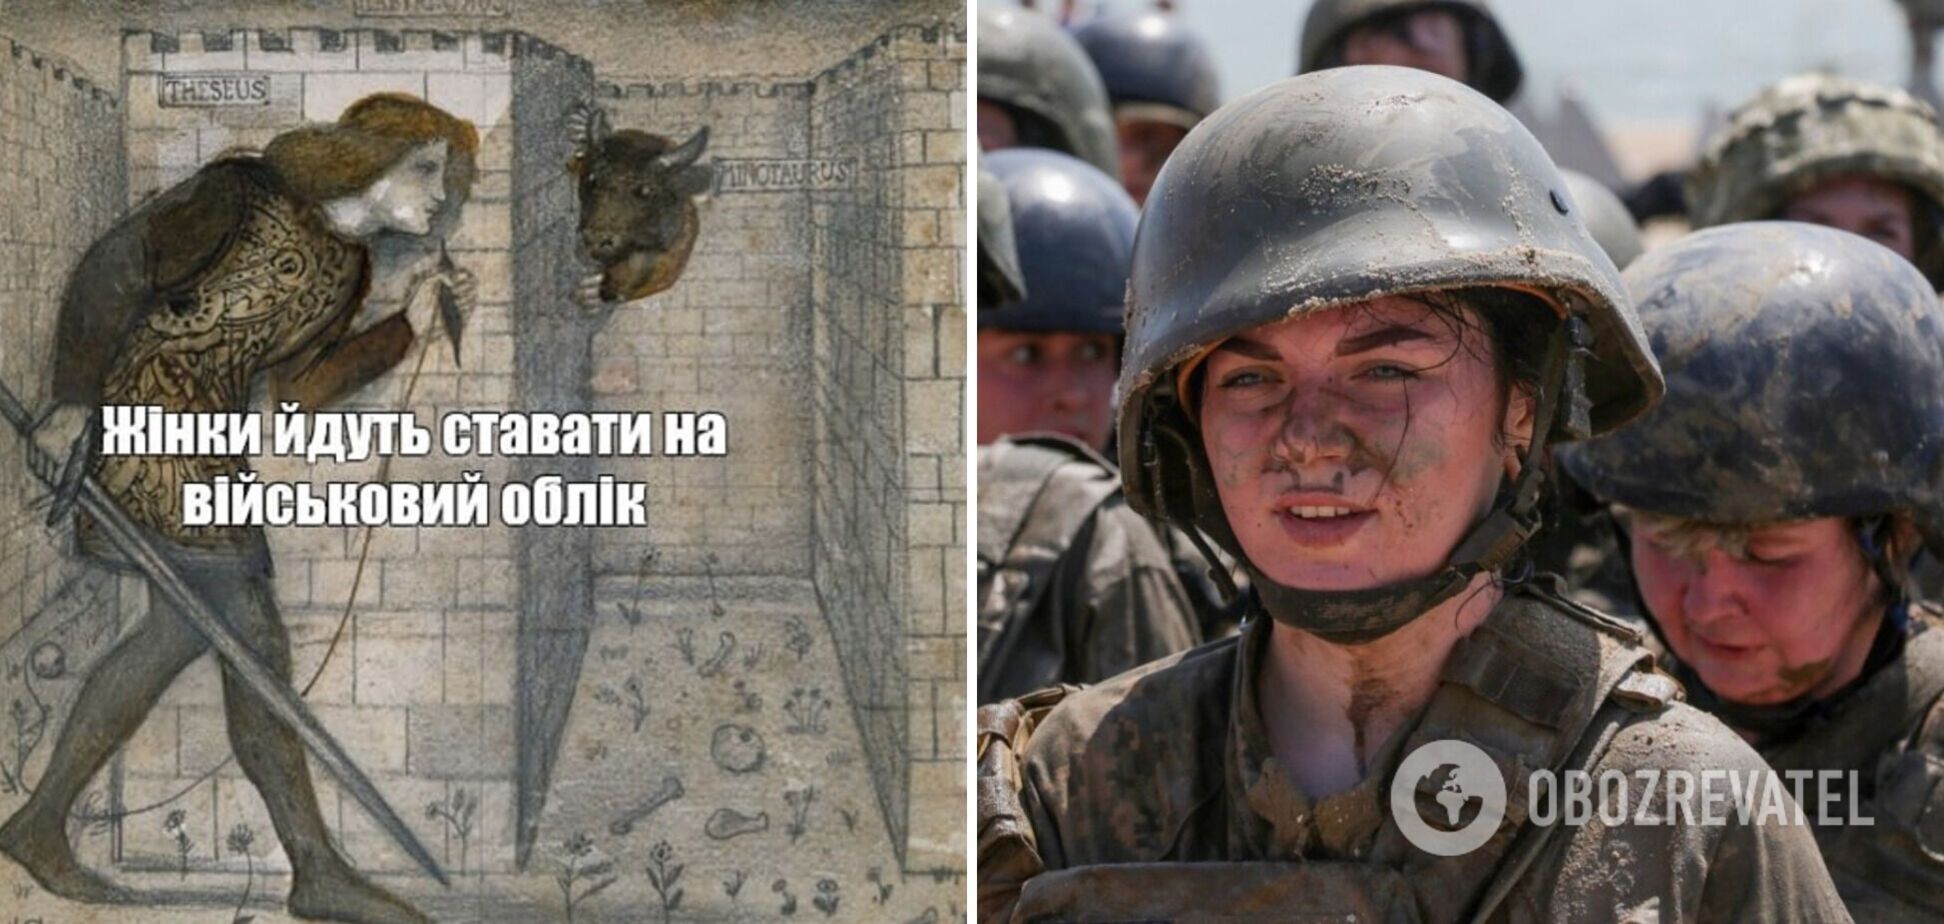 План 'укрАінскіє женщіни протів укрАінской воєнщіни' провалився